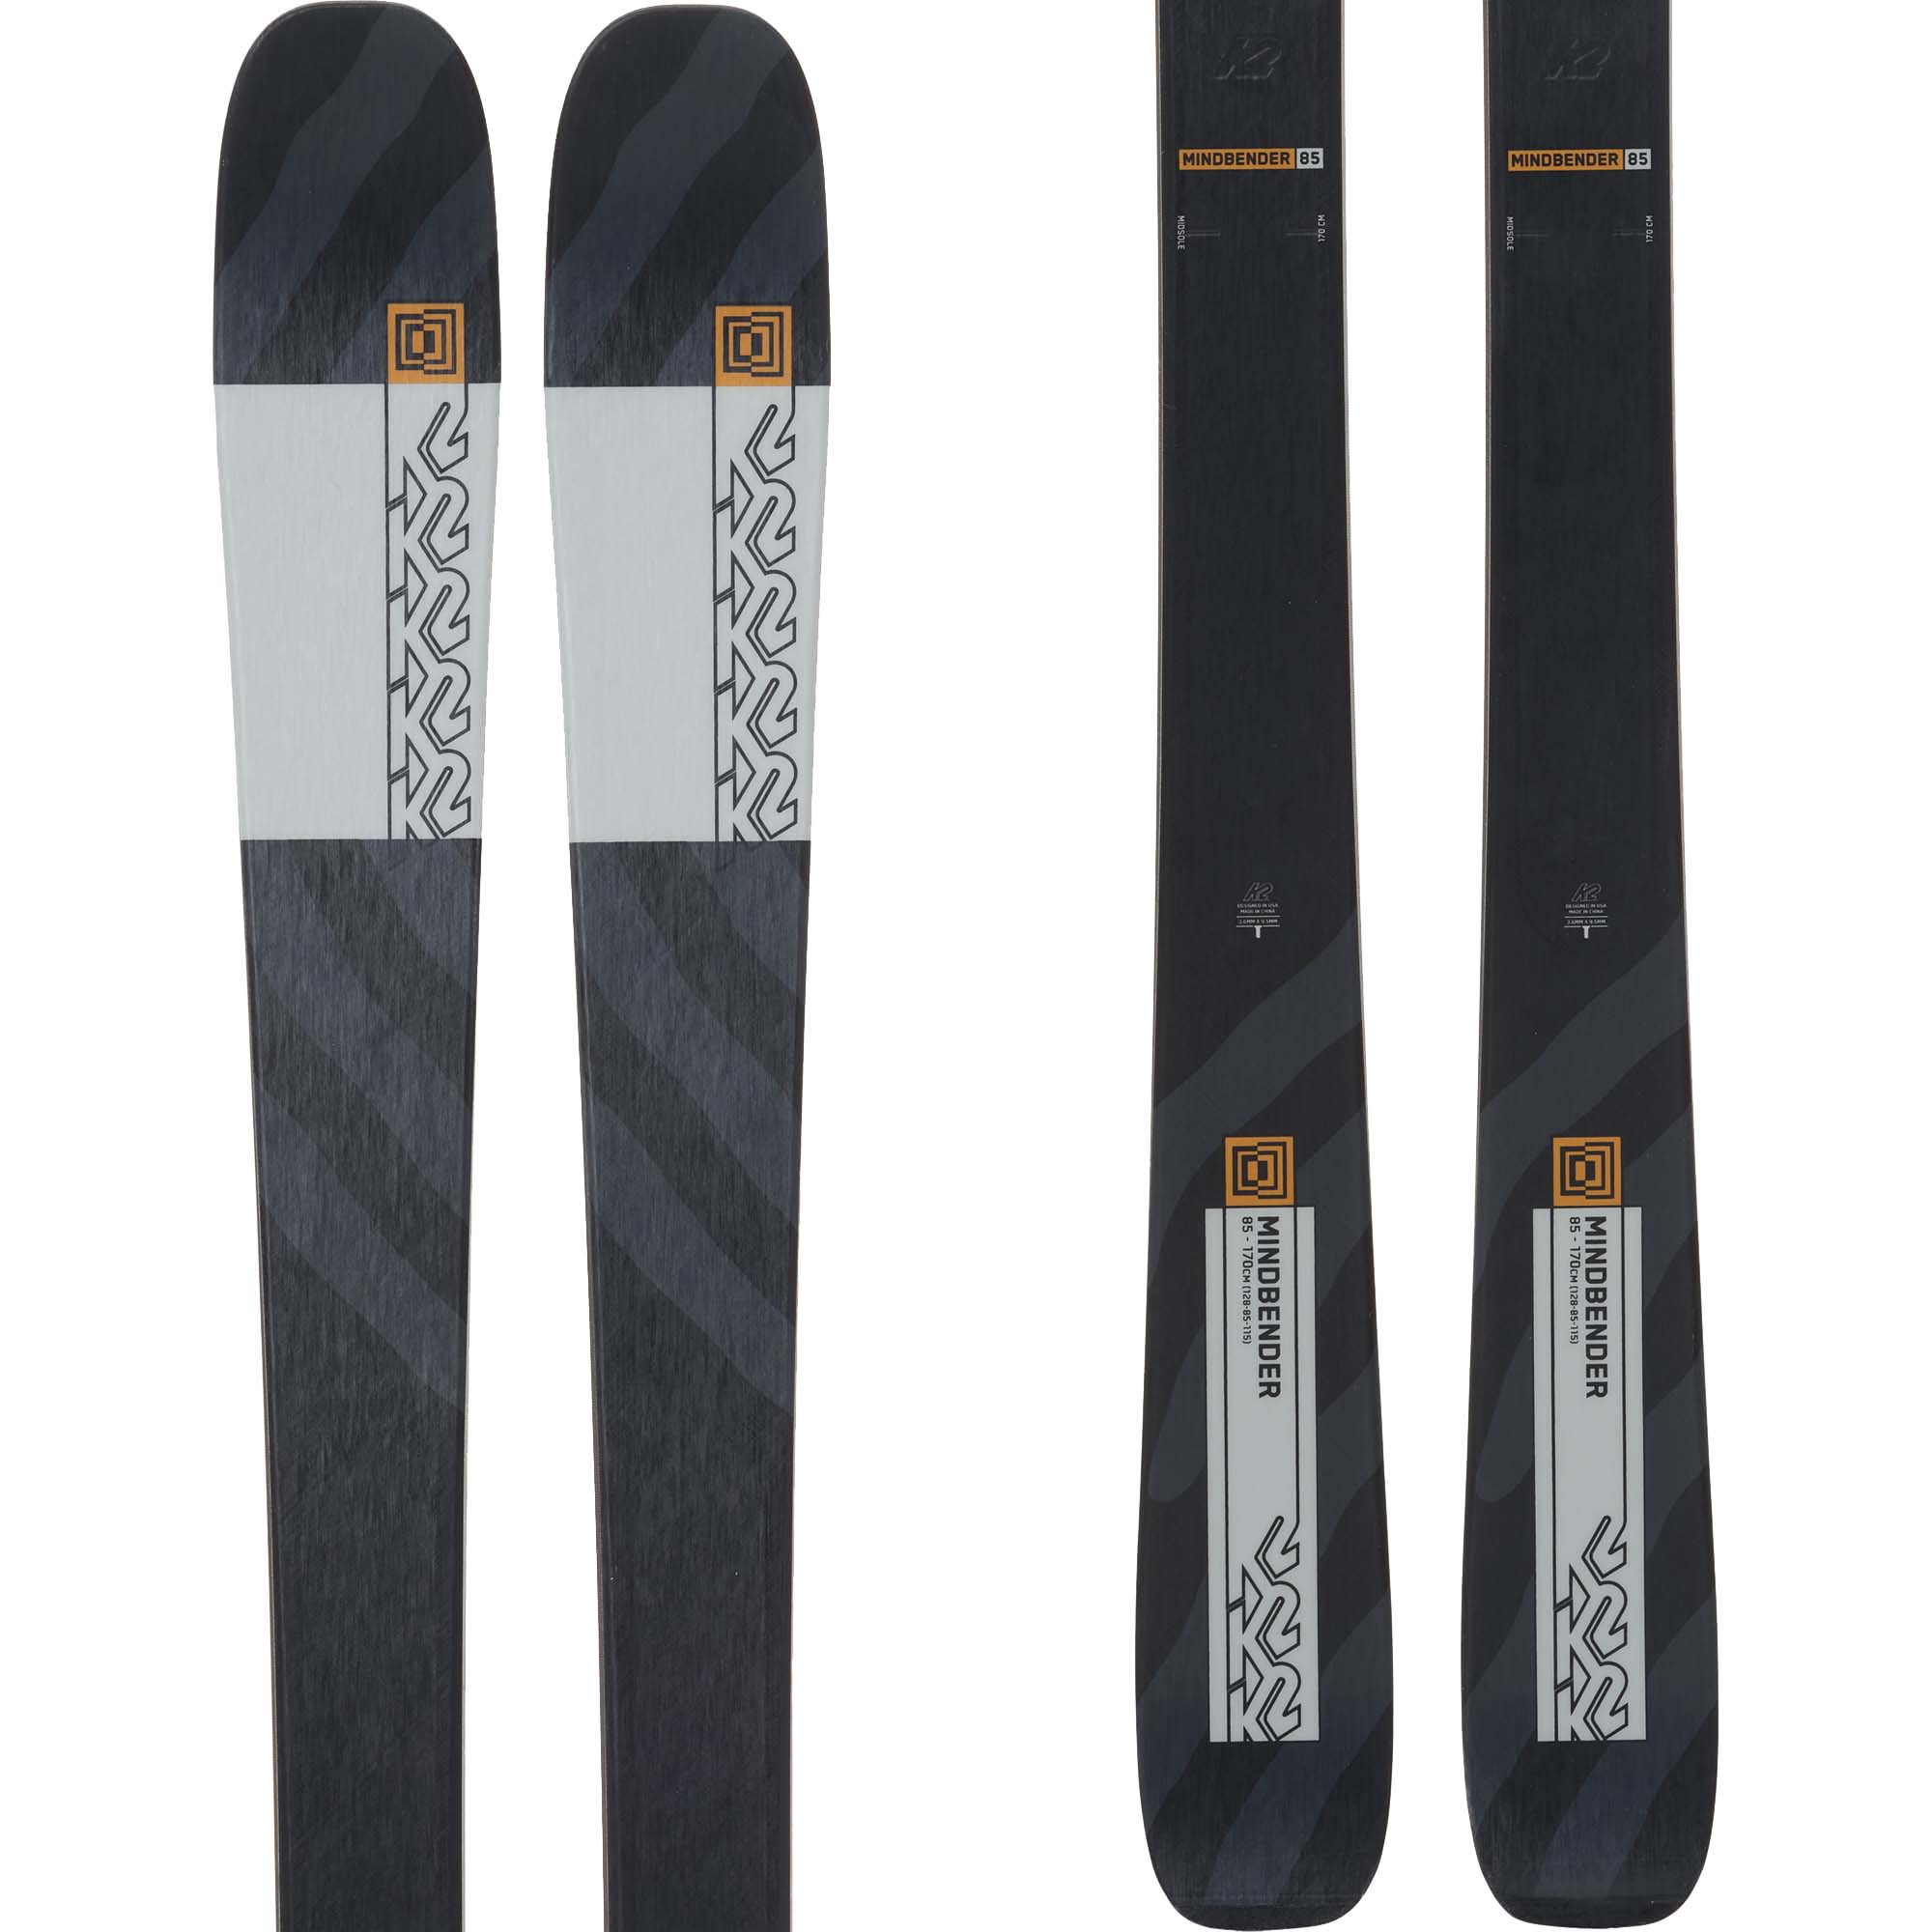 K2 Mindbender 85 Skis